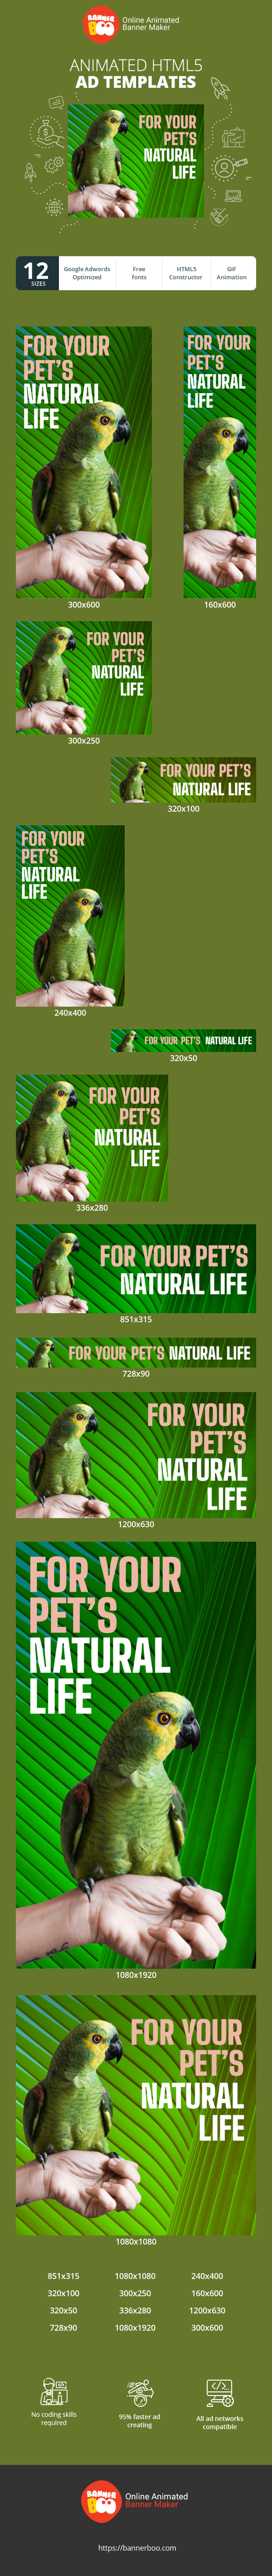 Szablon reklamy banerowej — For Your Pets Natural Life — Pet Shop